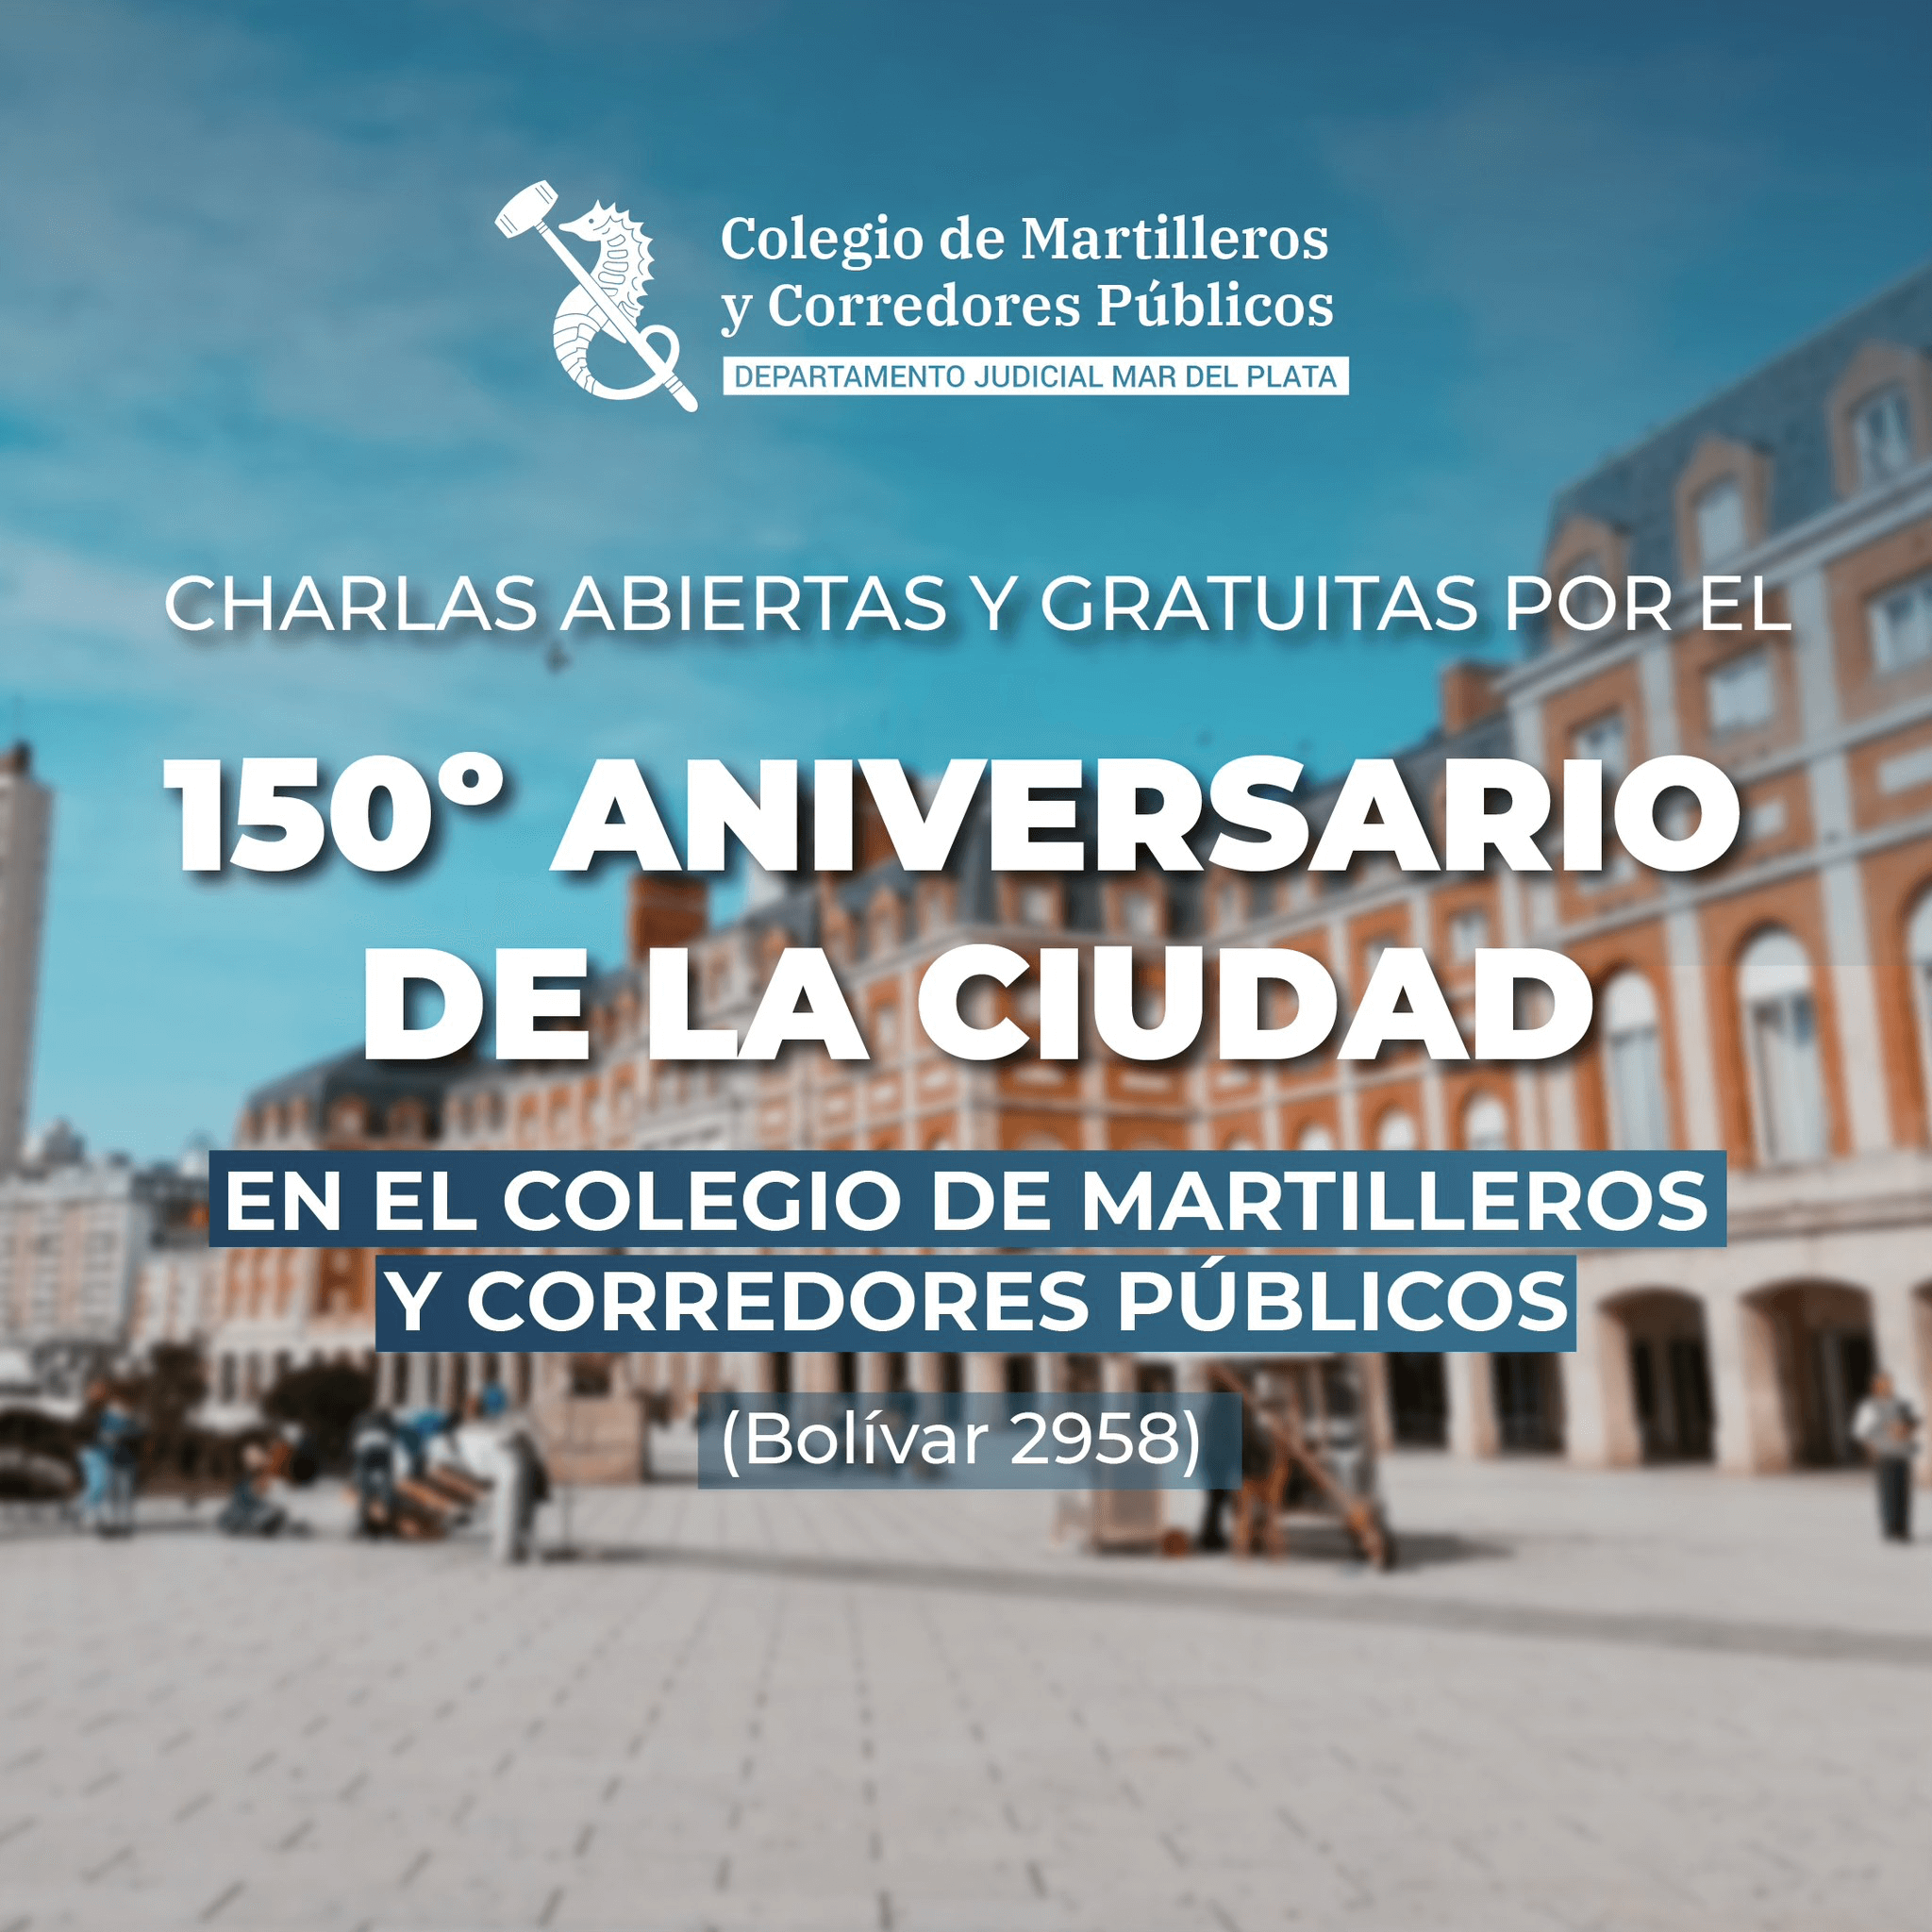 Resumen grabaciones de las Charlas Abiertas y Gratuitas por el 150º Aniversario de la Ciudad